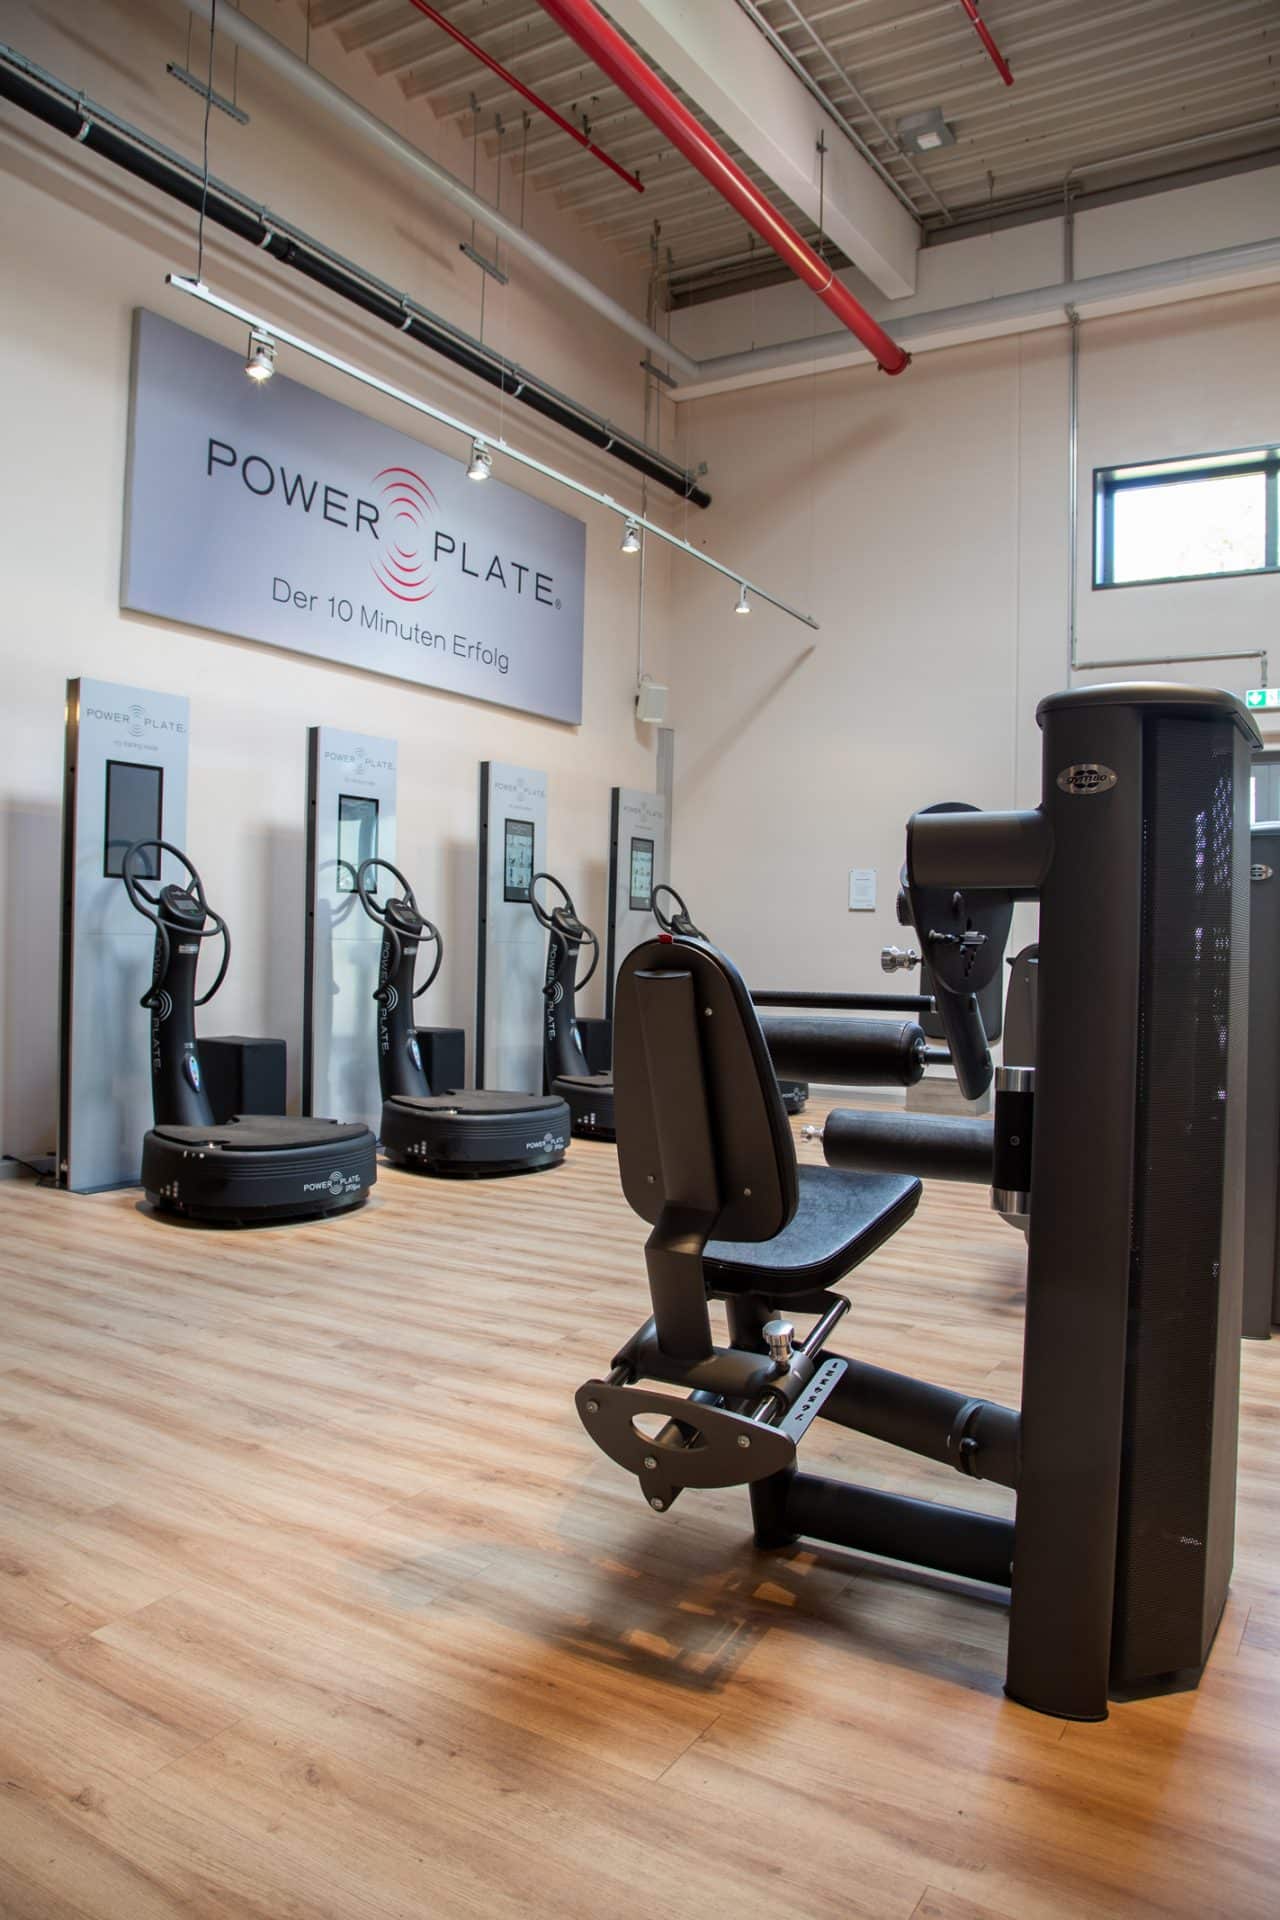 beneFit Fitnessstudio – Power Plate